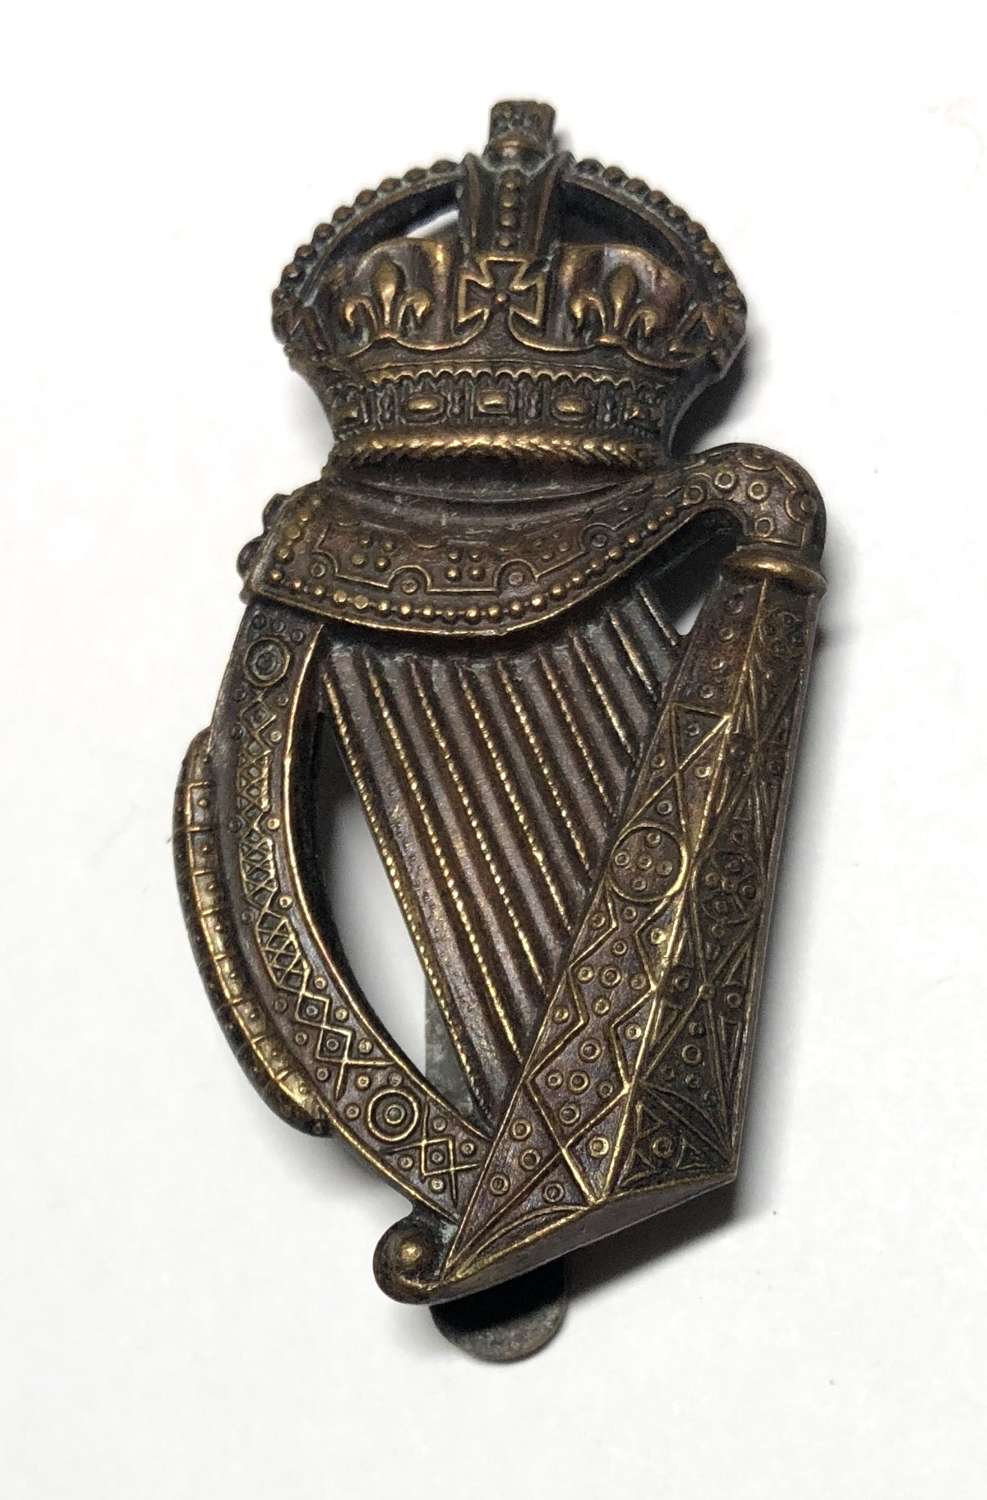 London Irish post 1908 cap badge